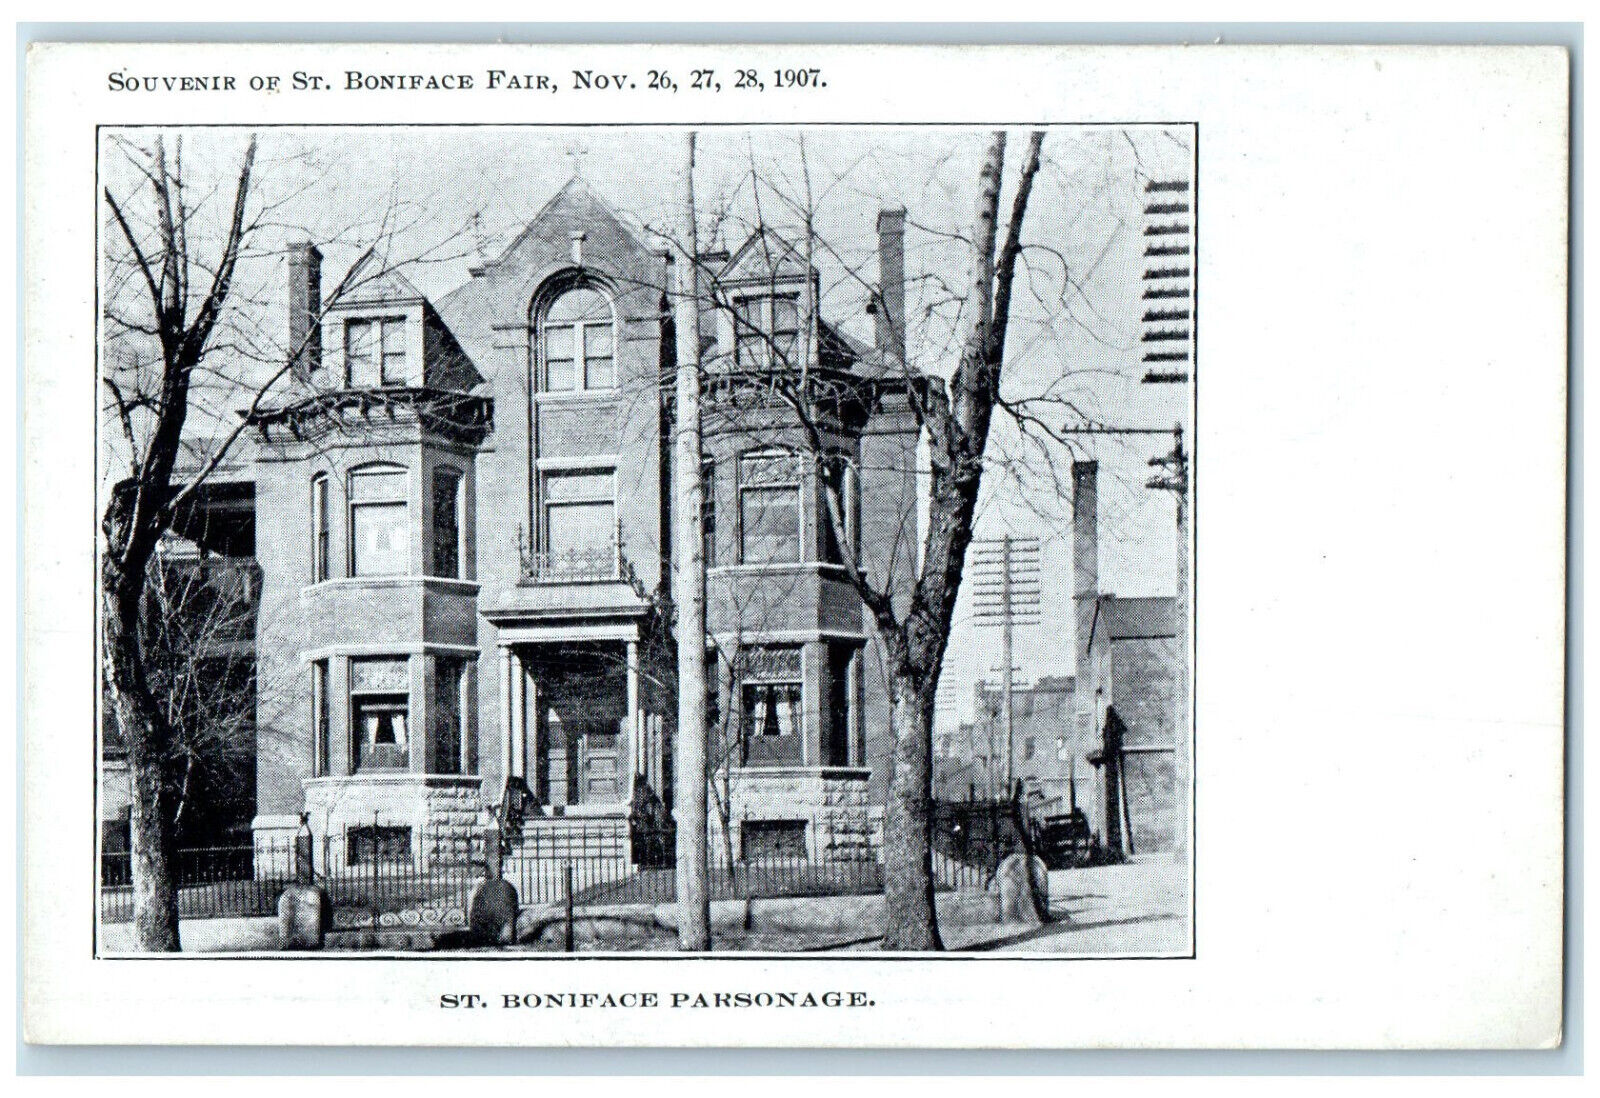 1907 St. Boniface Parsonage Souvenir of St. Boniface Fair IL Antique Postcard